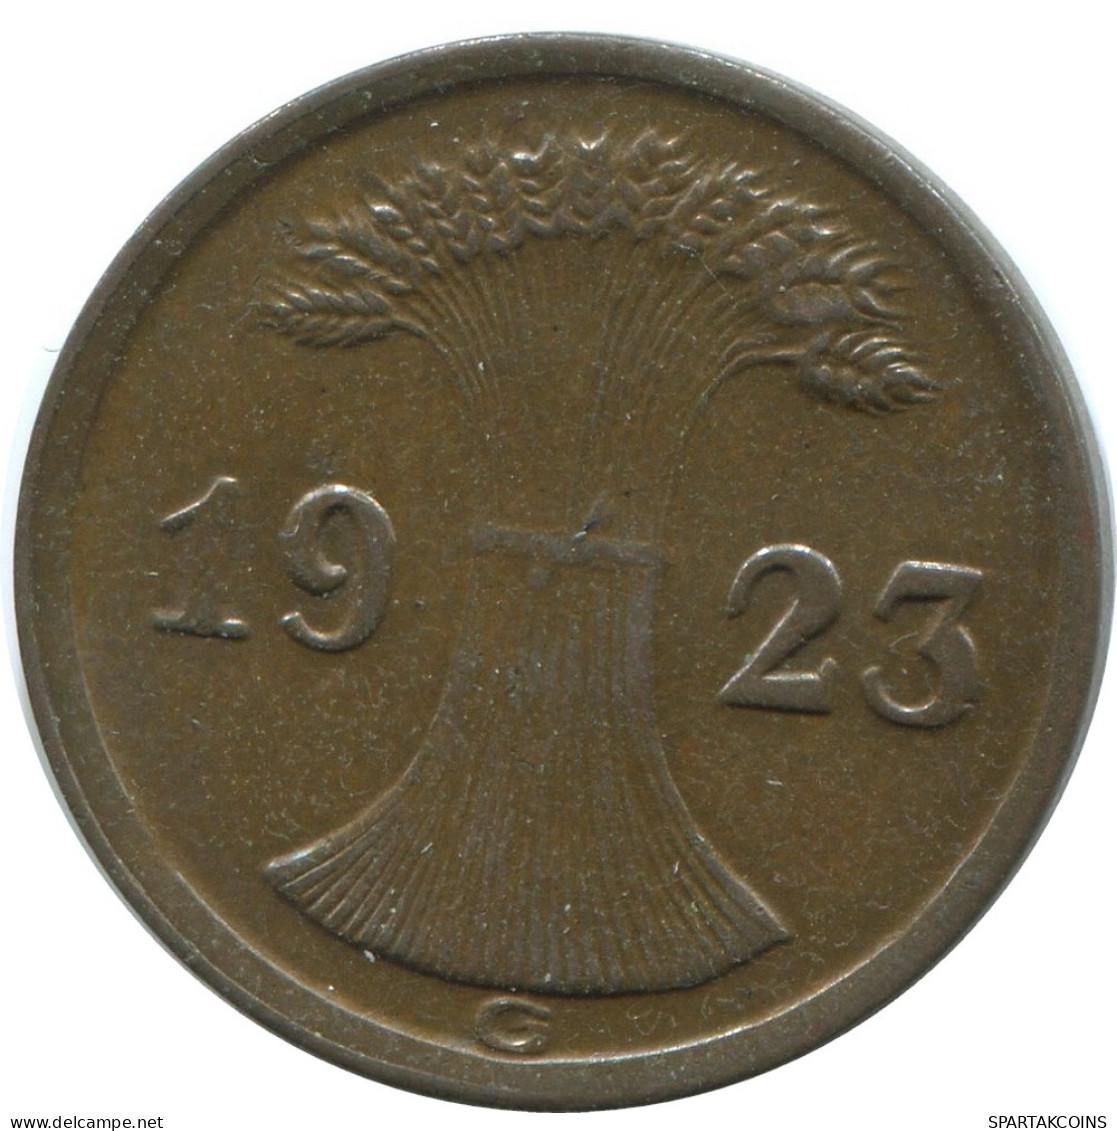 2 RENTENPFENNIG 1923 G GERMANY Coin #AE290.U - 2 Rentenpfennig & 2 Reichspfennig